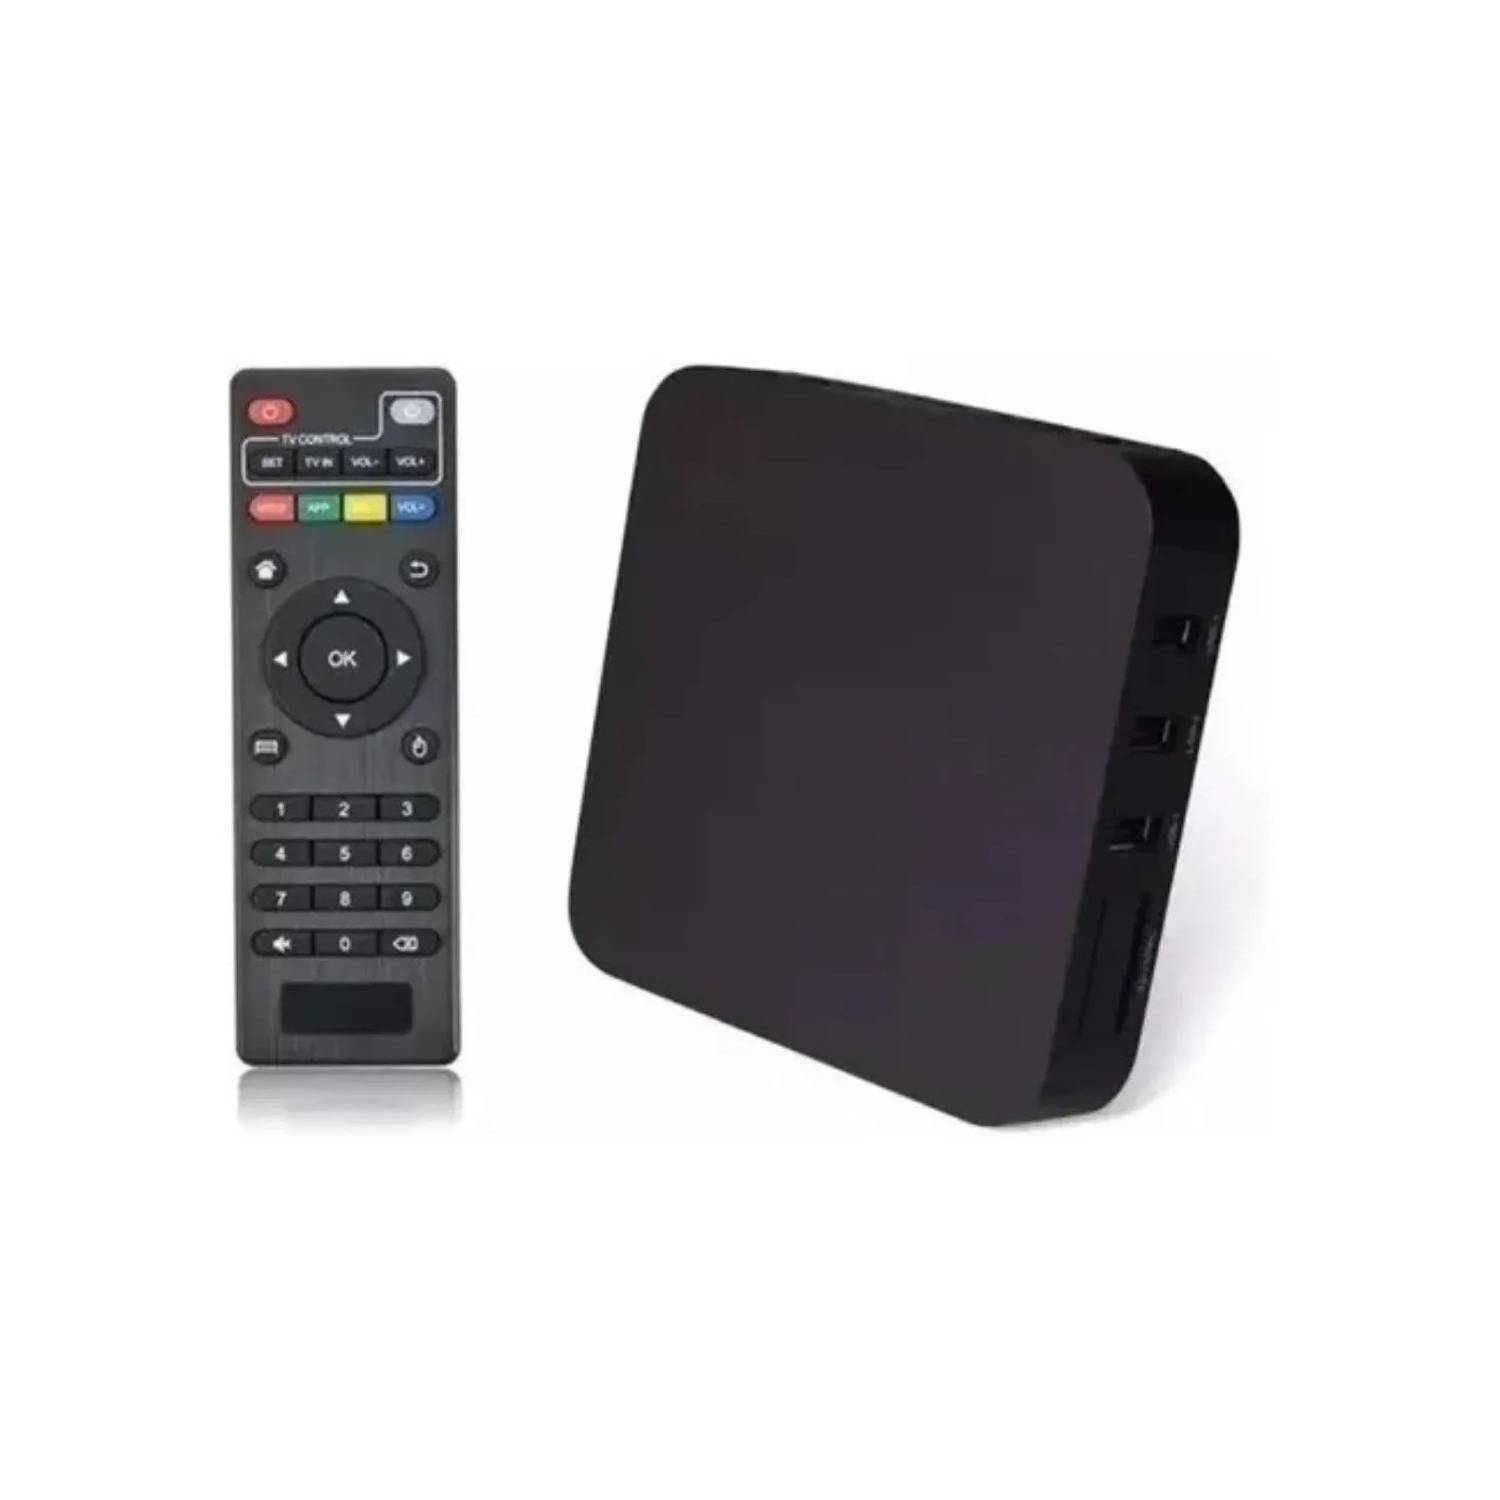 Convertidor de TV a Smart TV (Android TV Box) X96 Mini